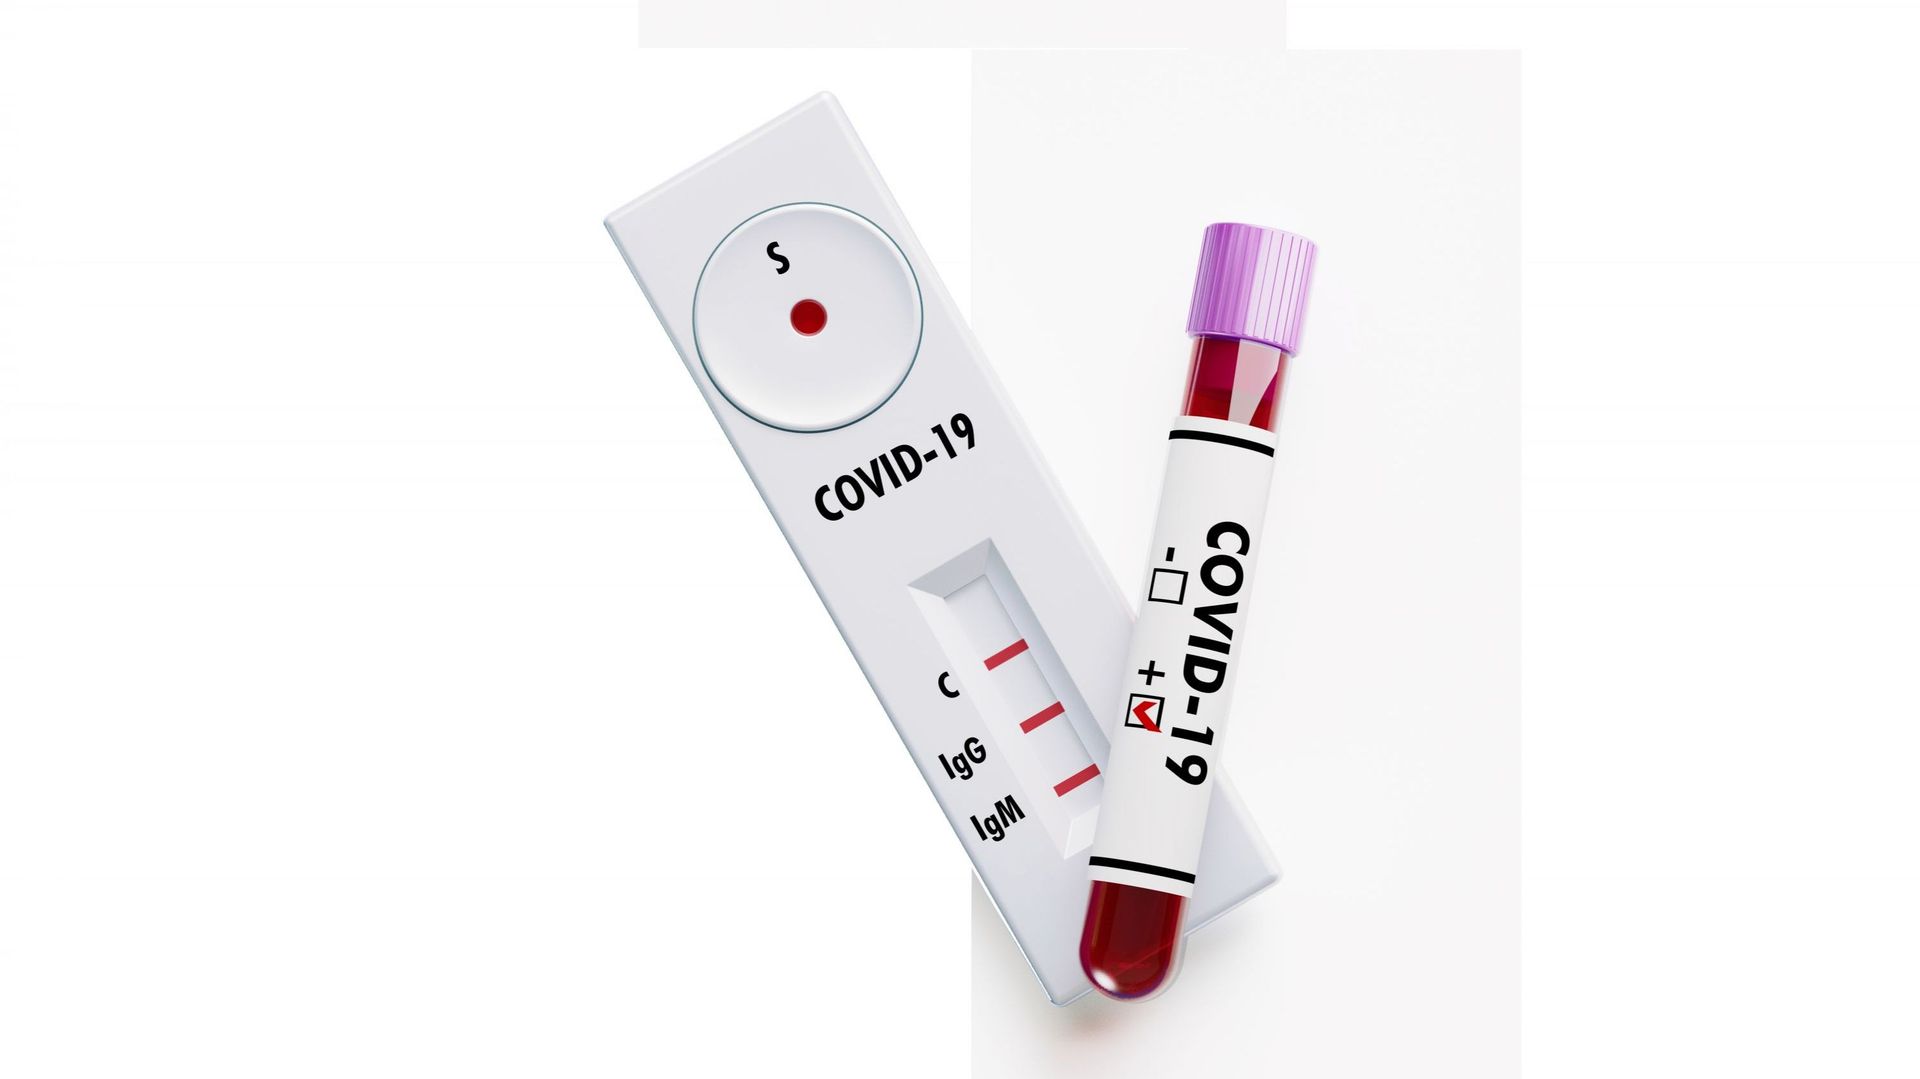 À gauche de l’image, un dispositif de test rapide au coronavirus similaire à ceux vendus en ligne.